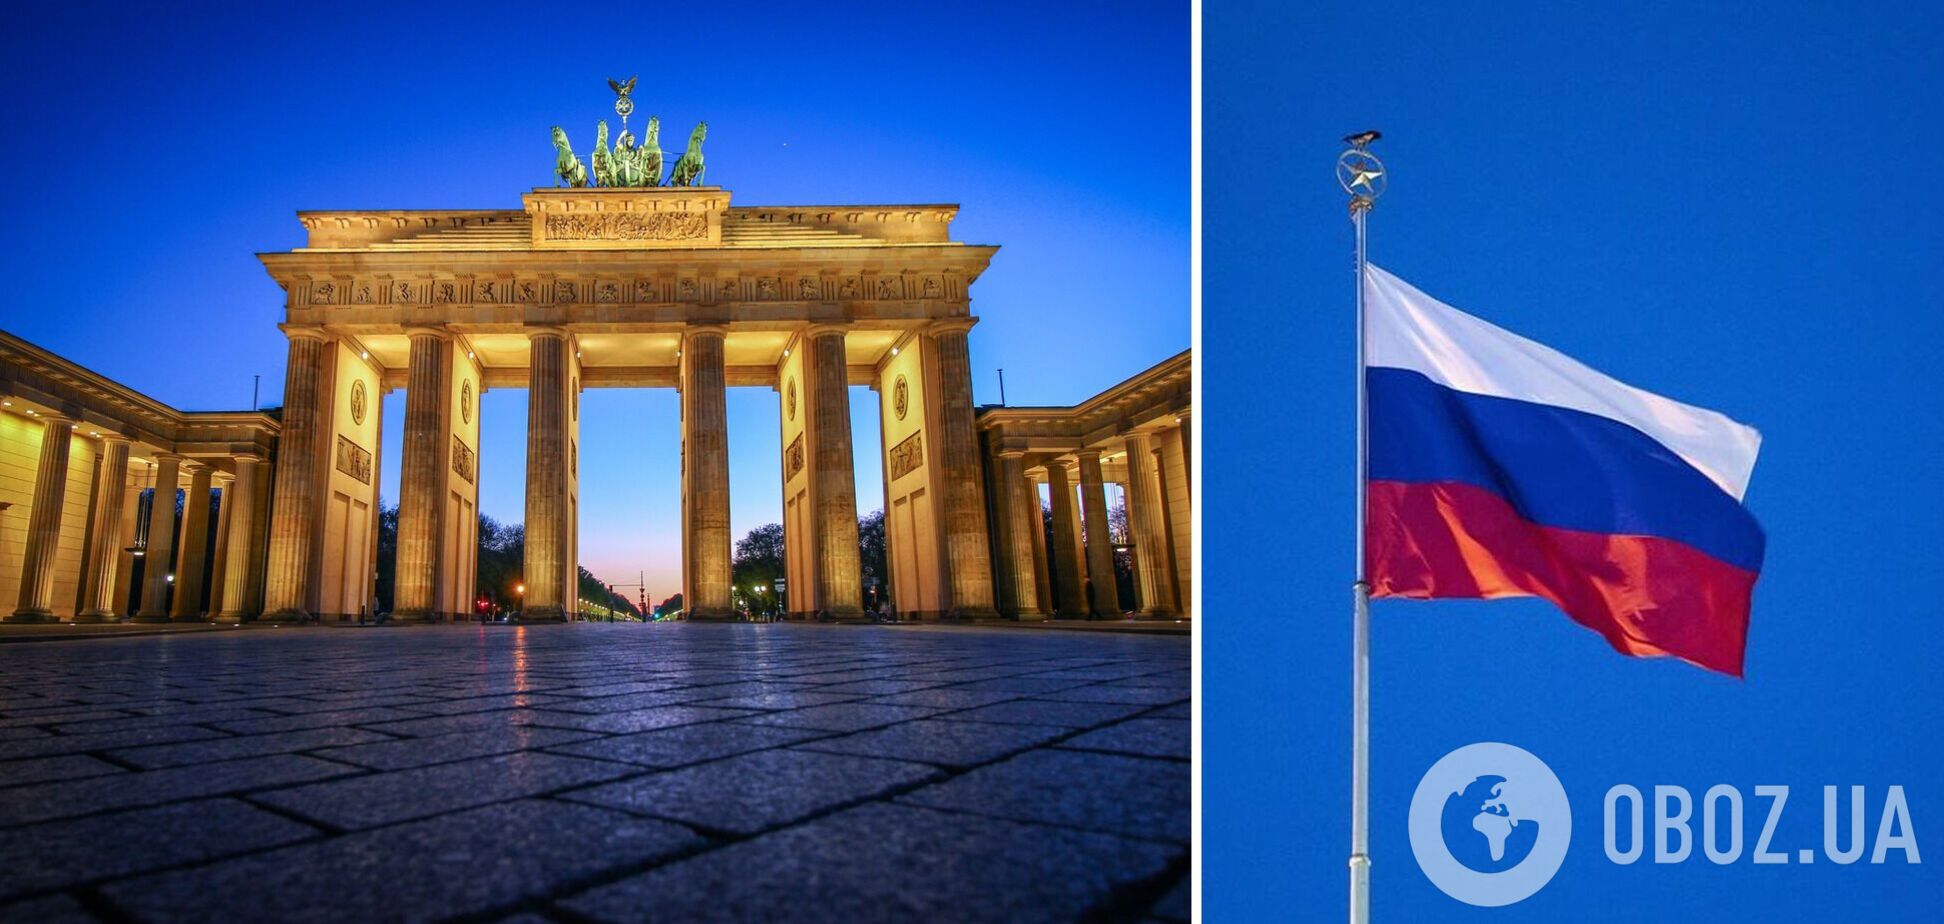 Немецкий суд хочет отмены запрета на демонстрацию флагов РФ 9 мая, в полиции Берлина не согласны